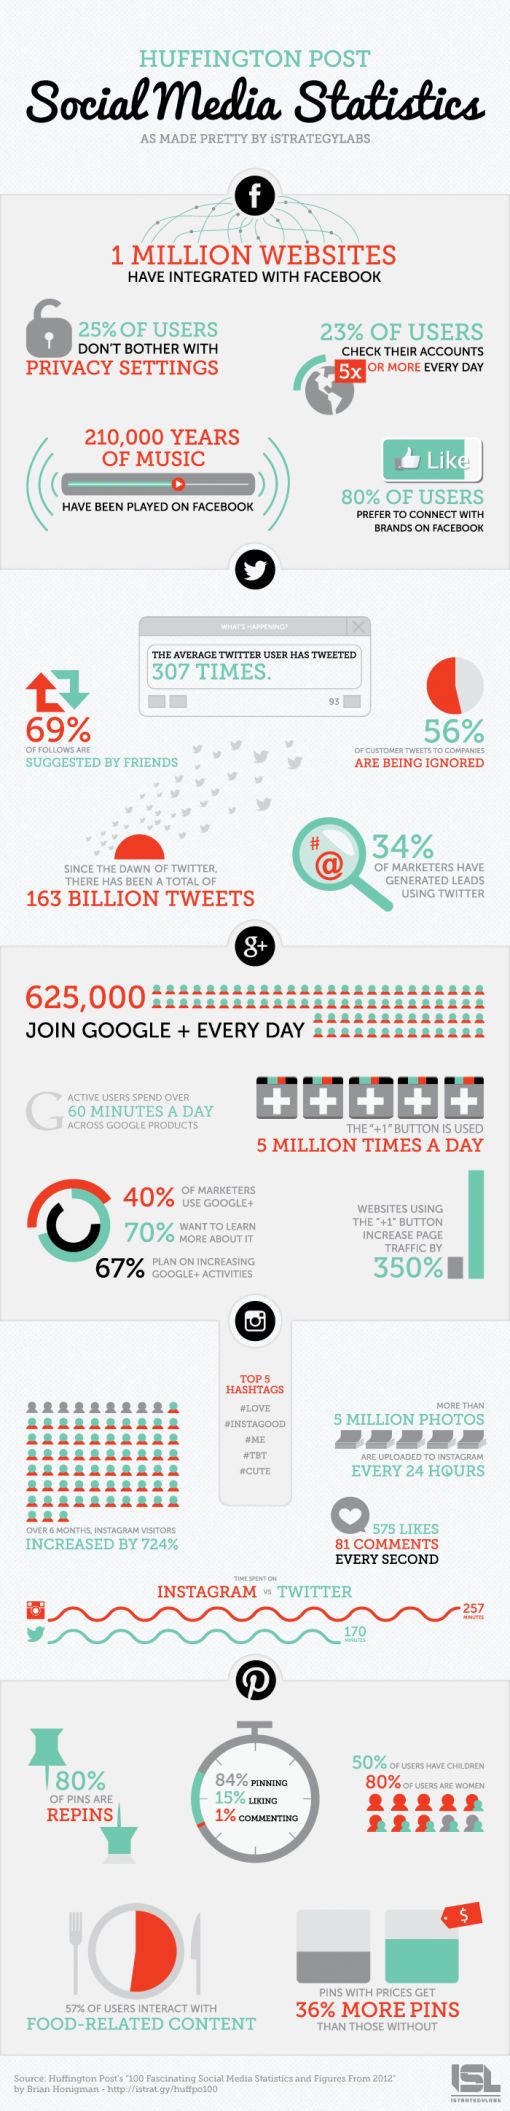 social-media-stats-2012 (2)